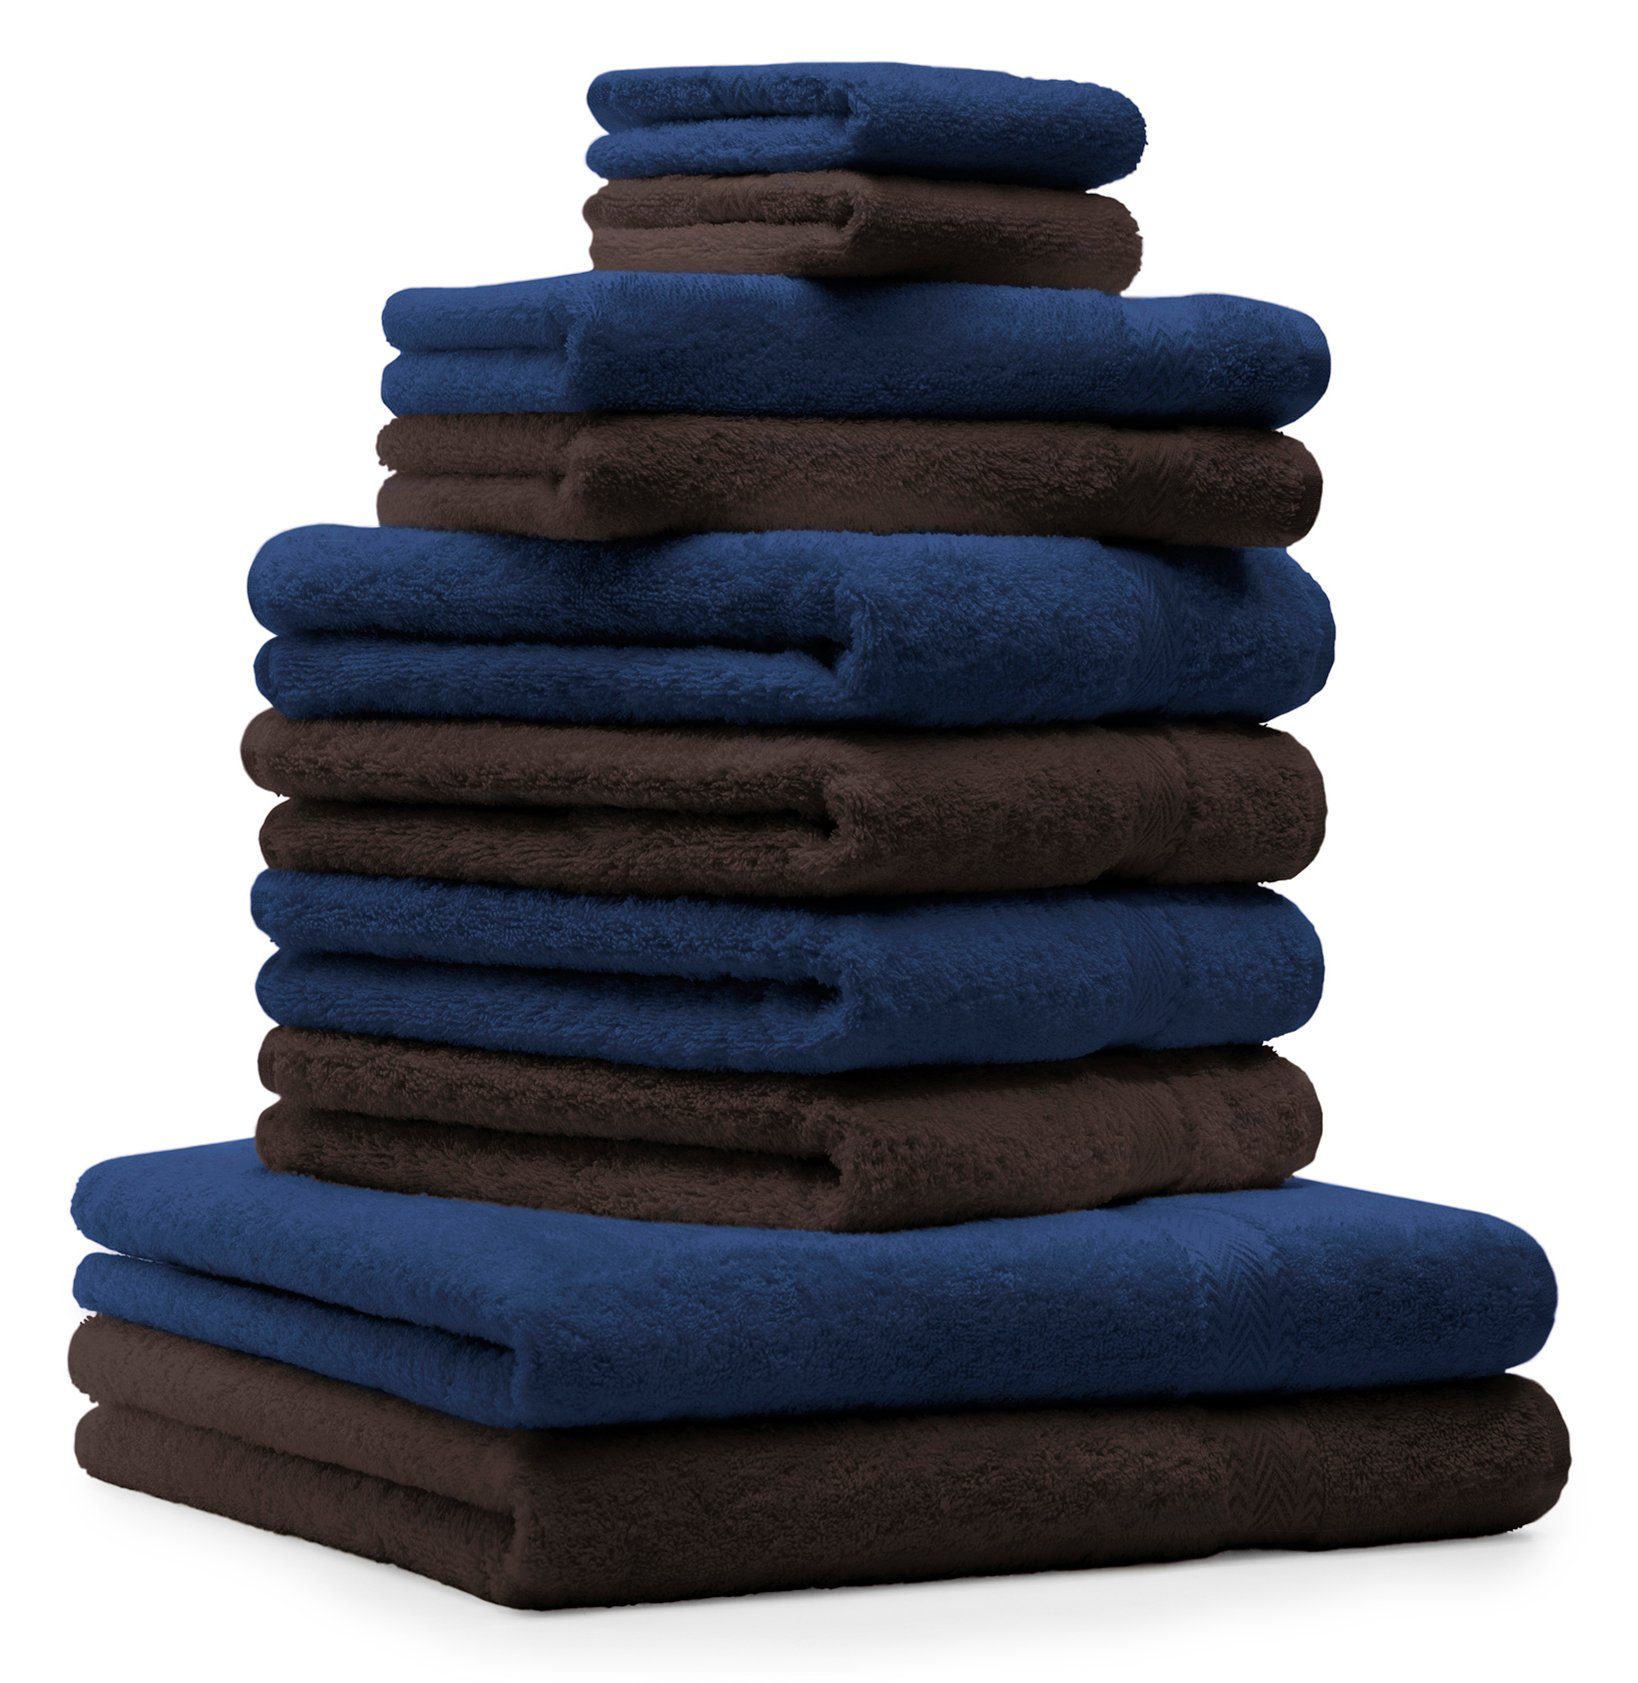 Betz Handtuch Set 10-TLG. Handtücher-Set Classic Farbe dunkelblau und Dunkelbraun, 100% Baumwolle